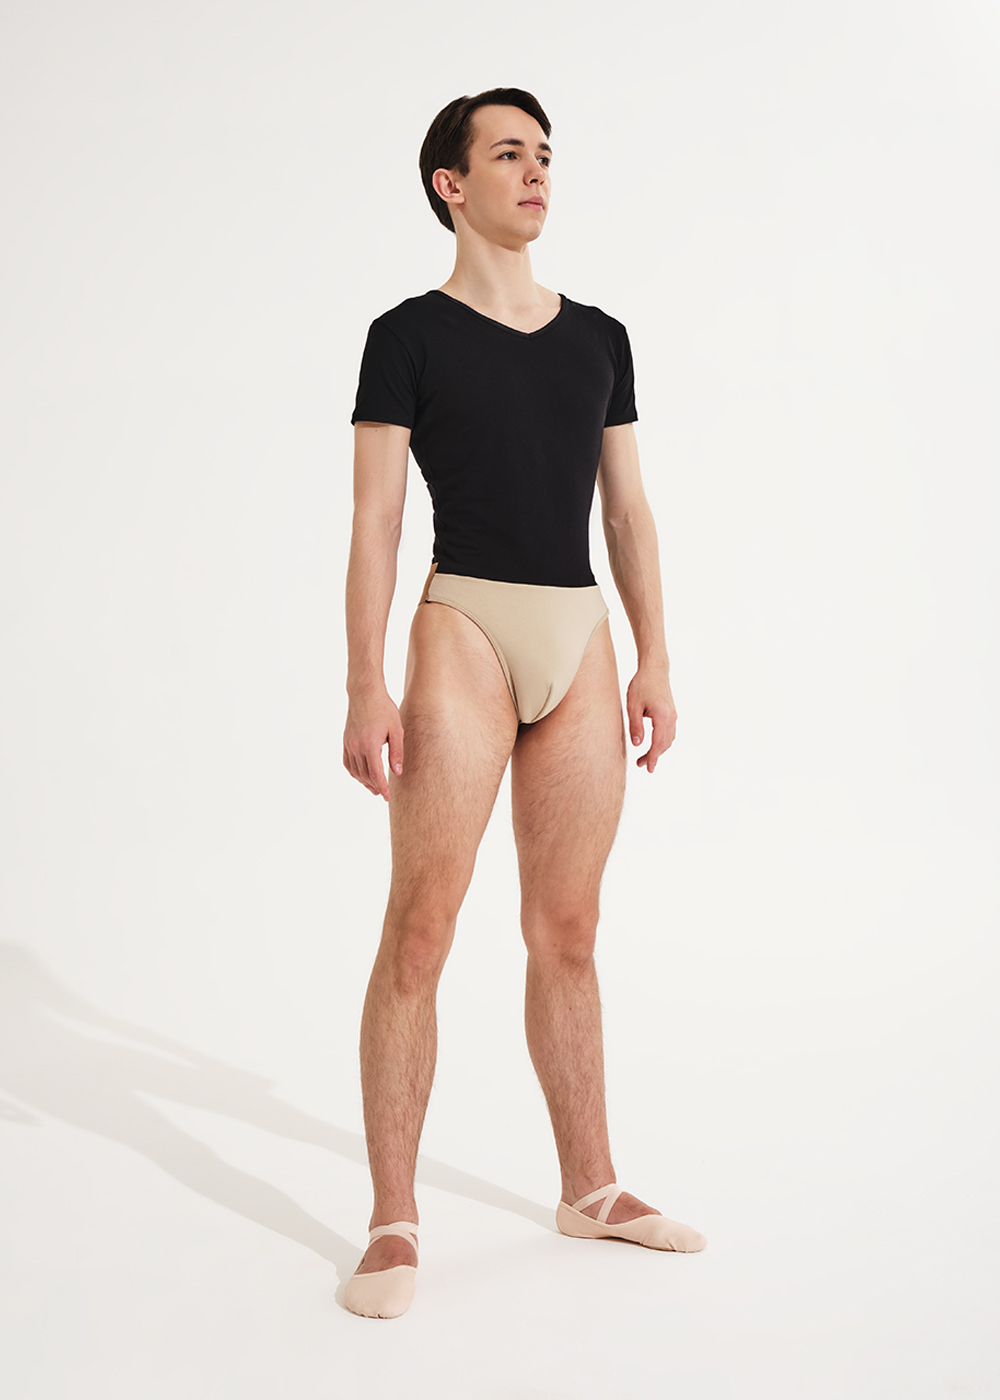 DA3088C PATTON, Men's bodysuit, cotton (DA3088C)